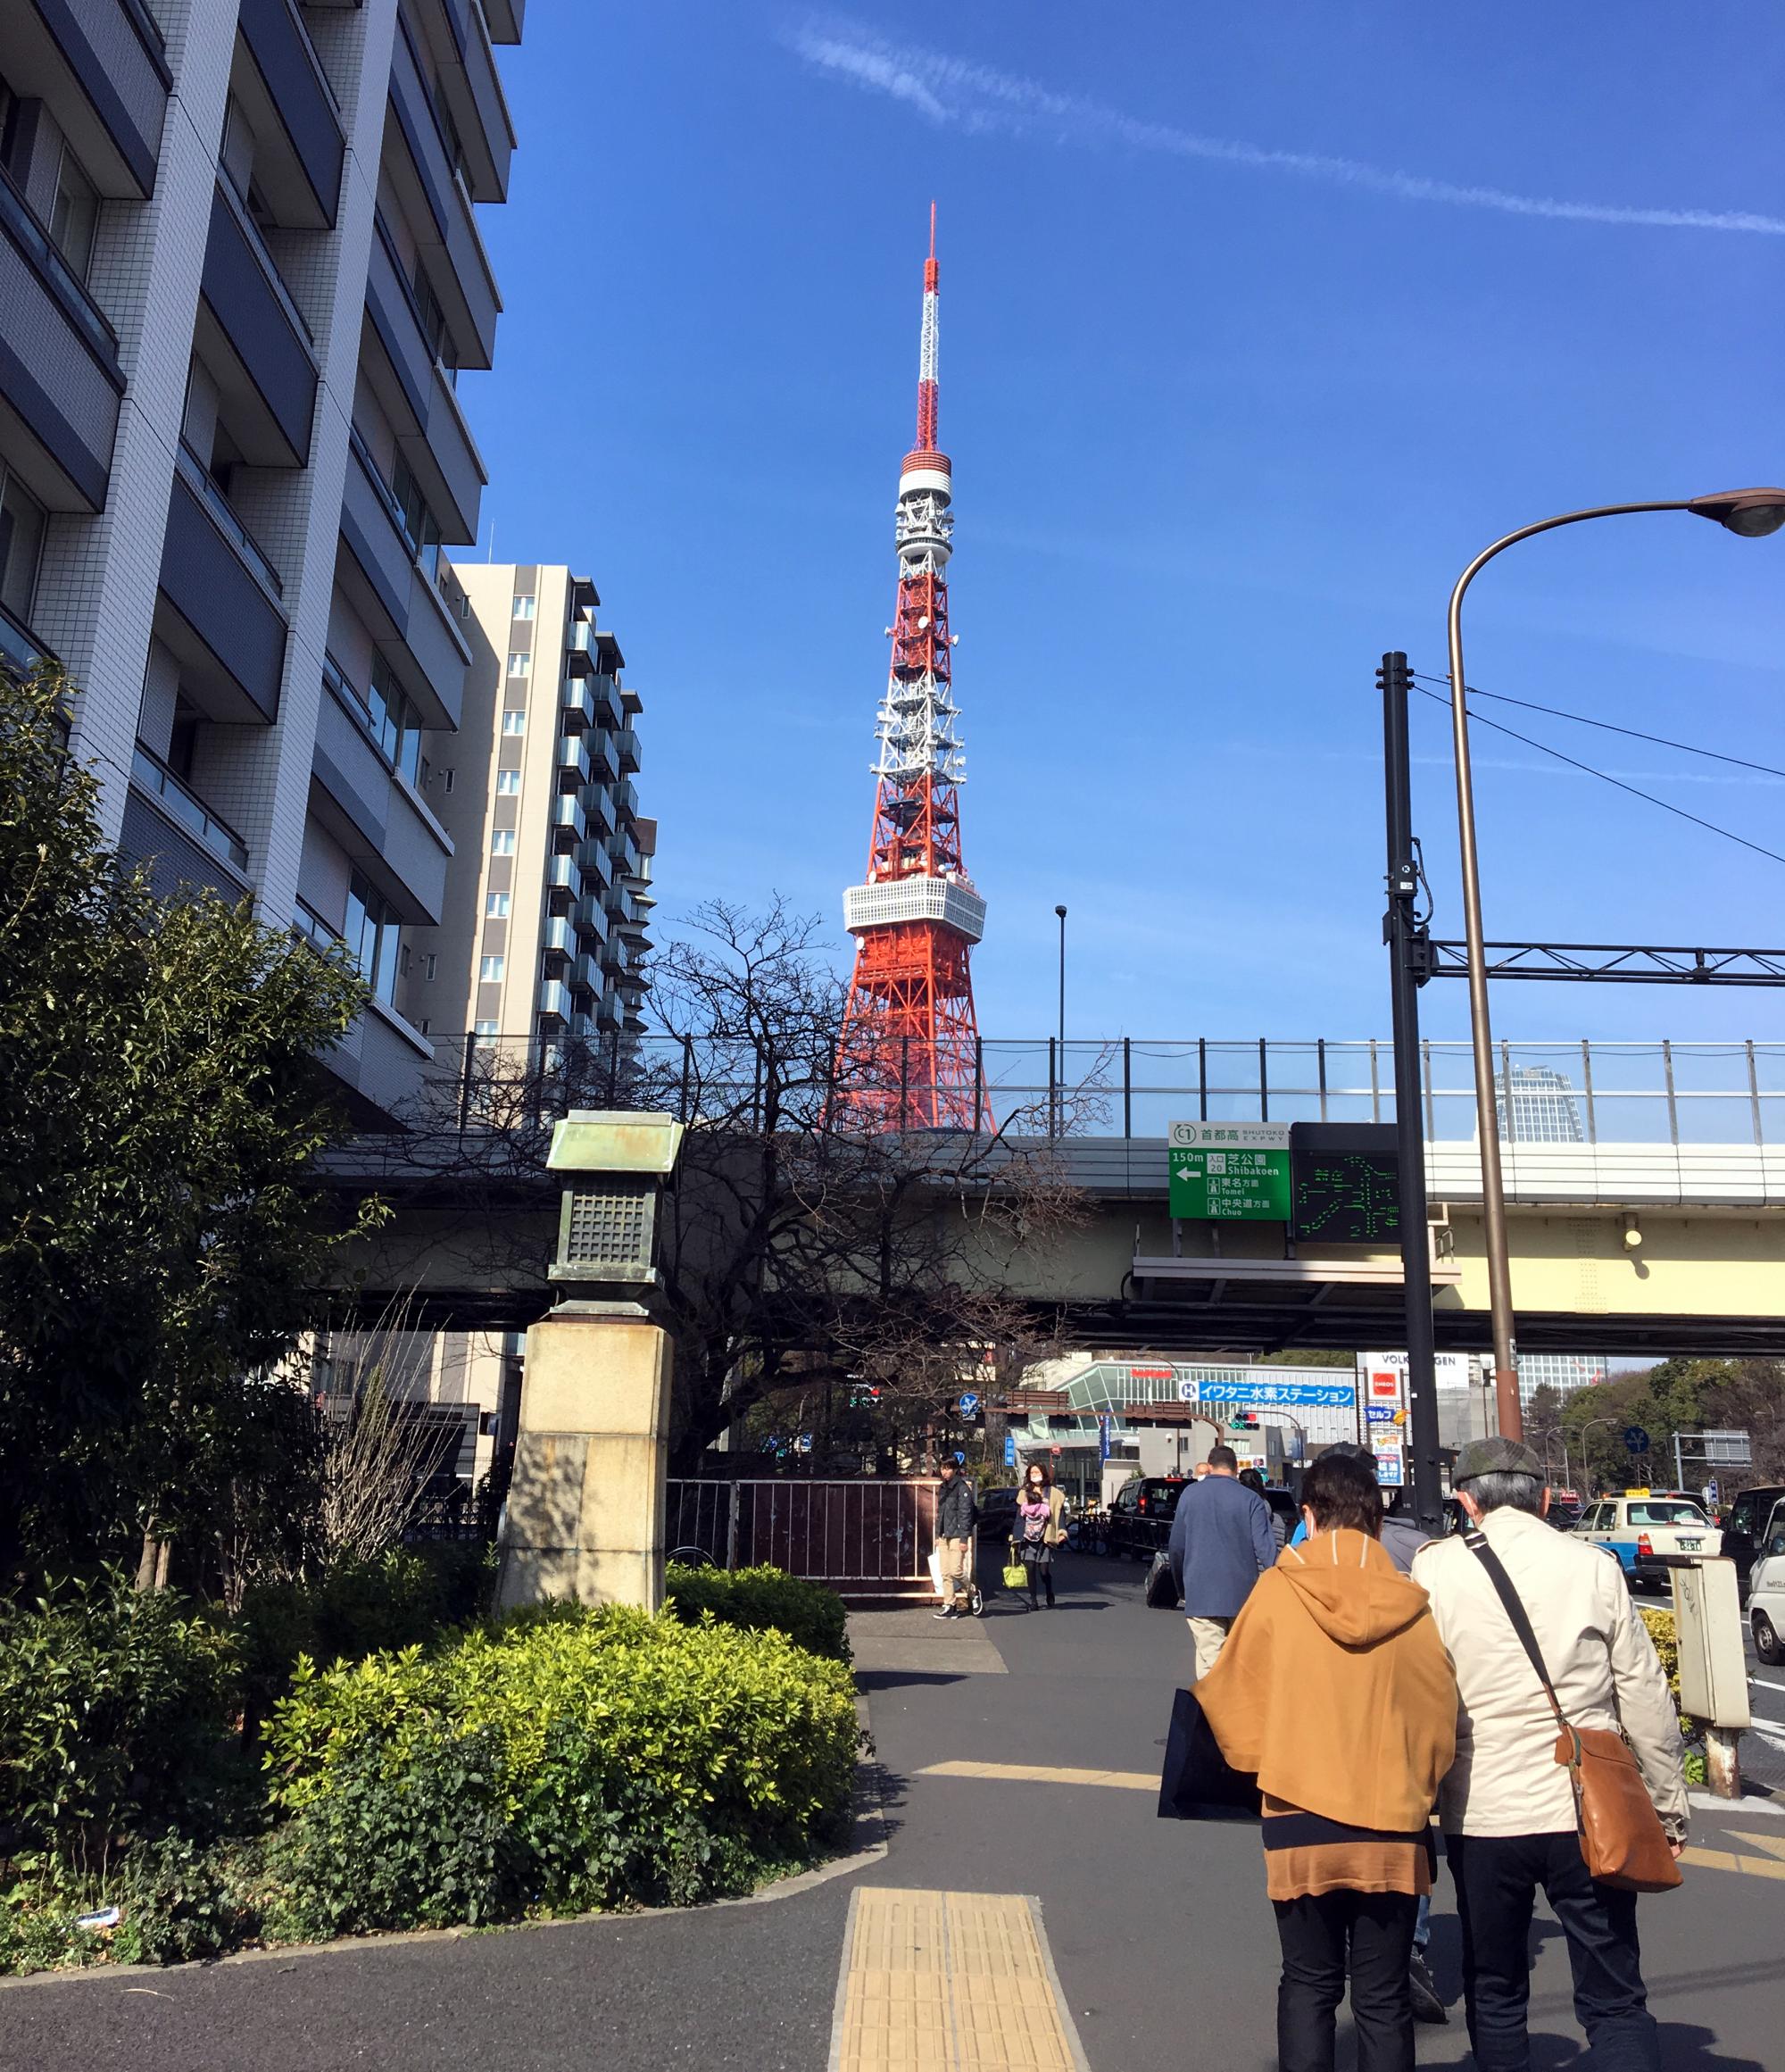 Tokyo (2017) - Tokyo Tower